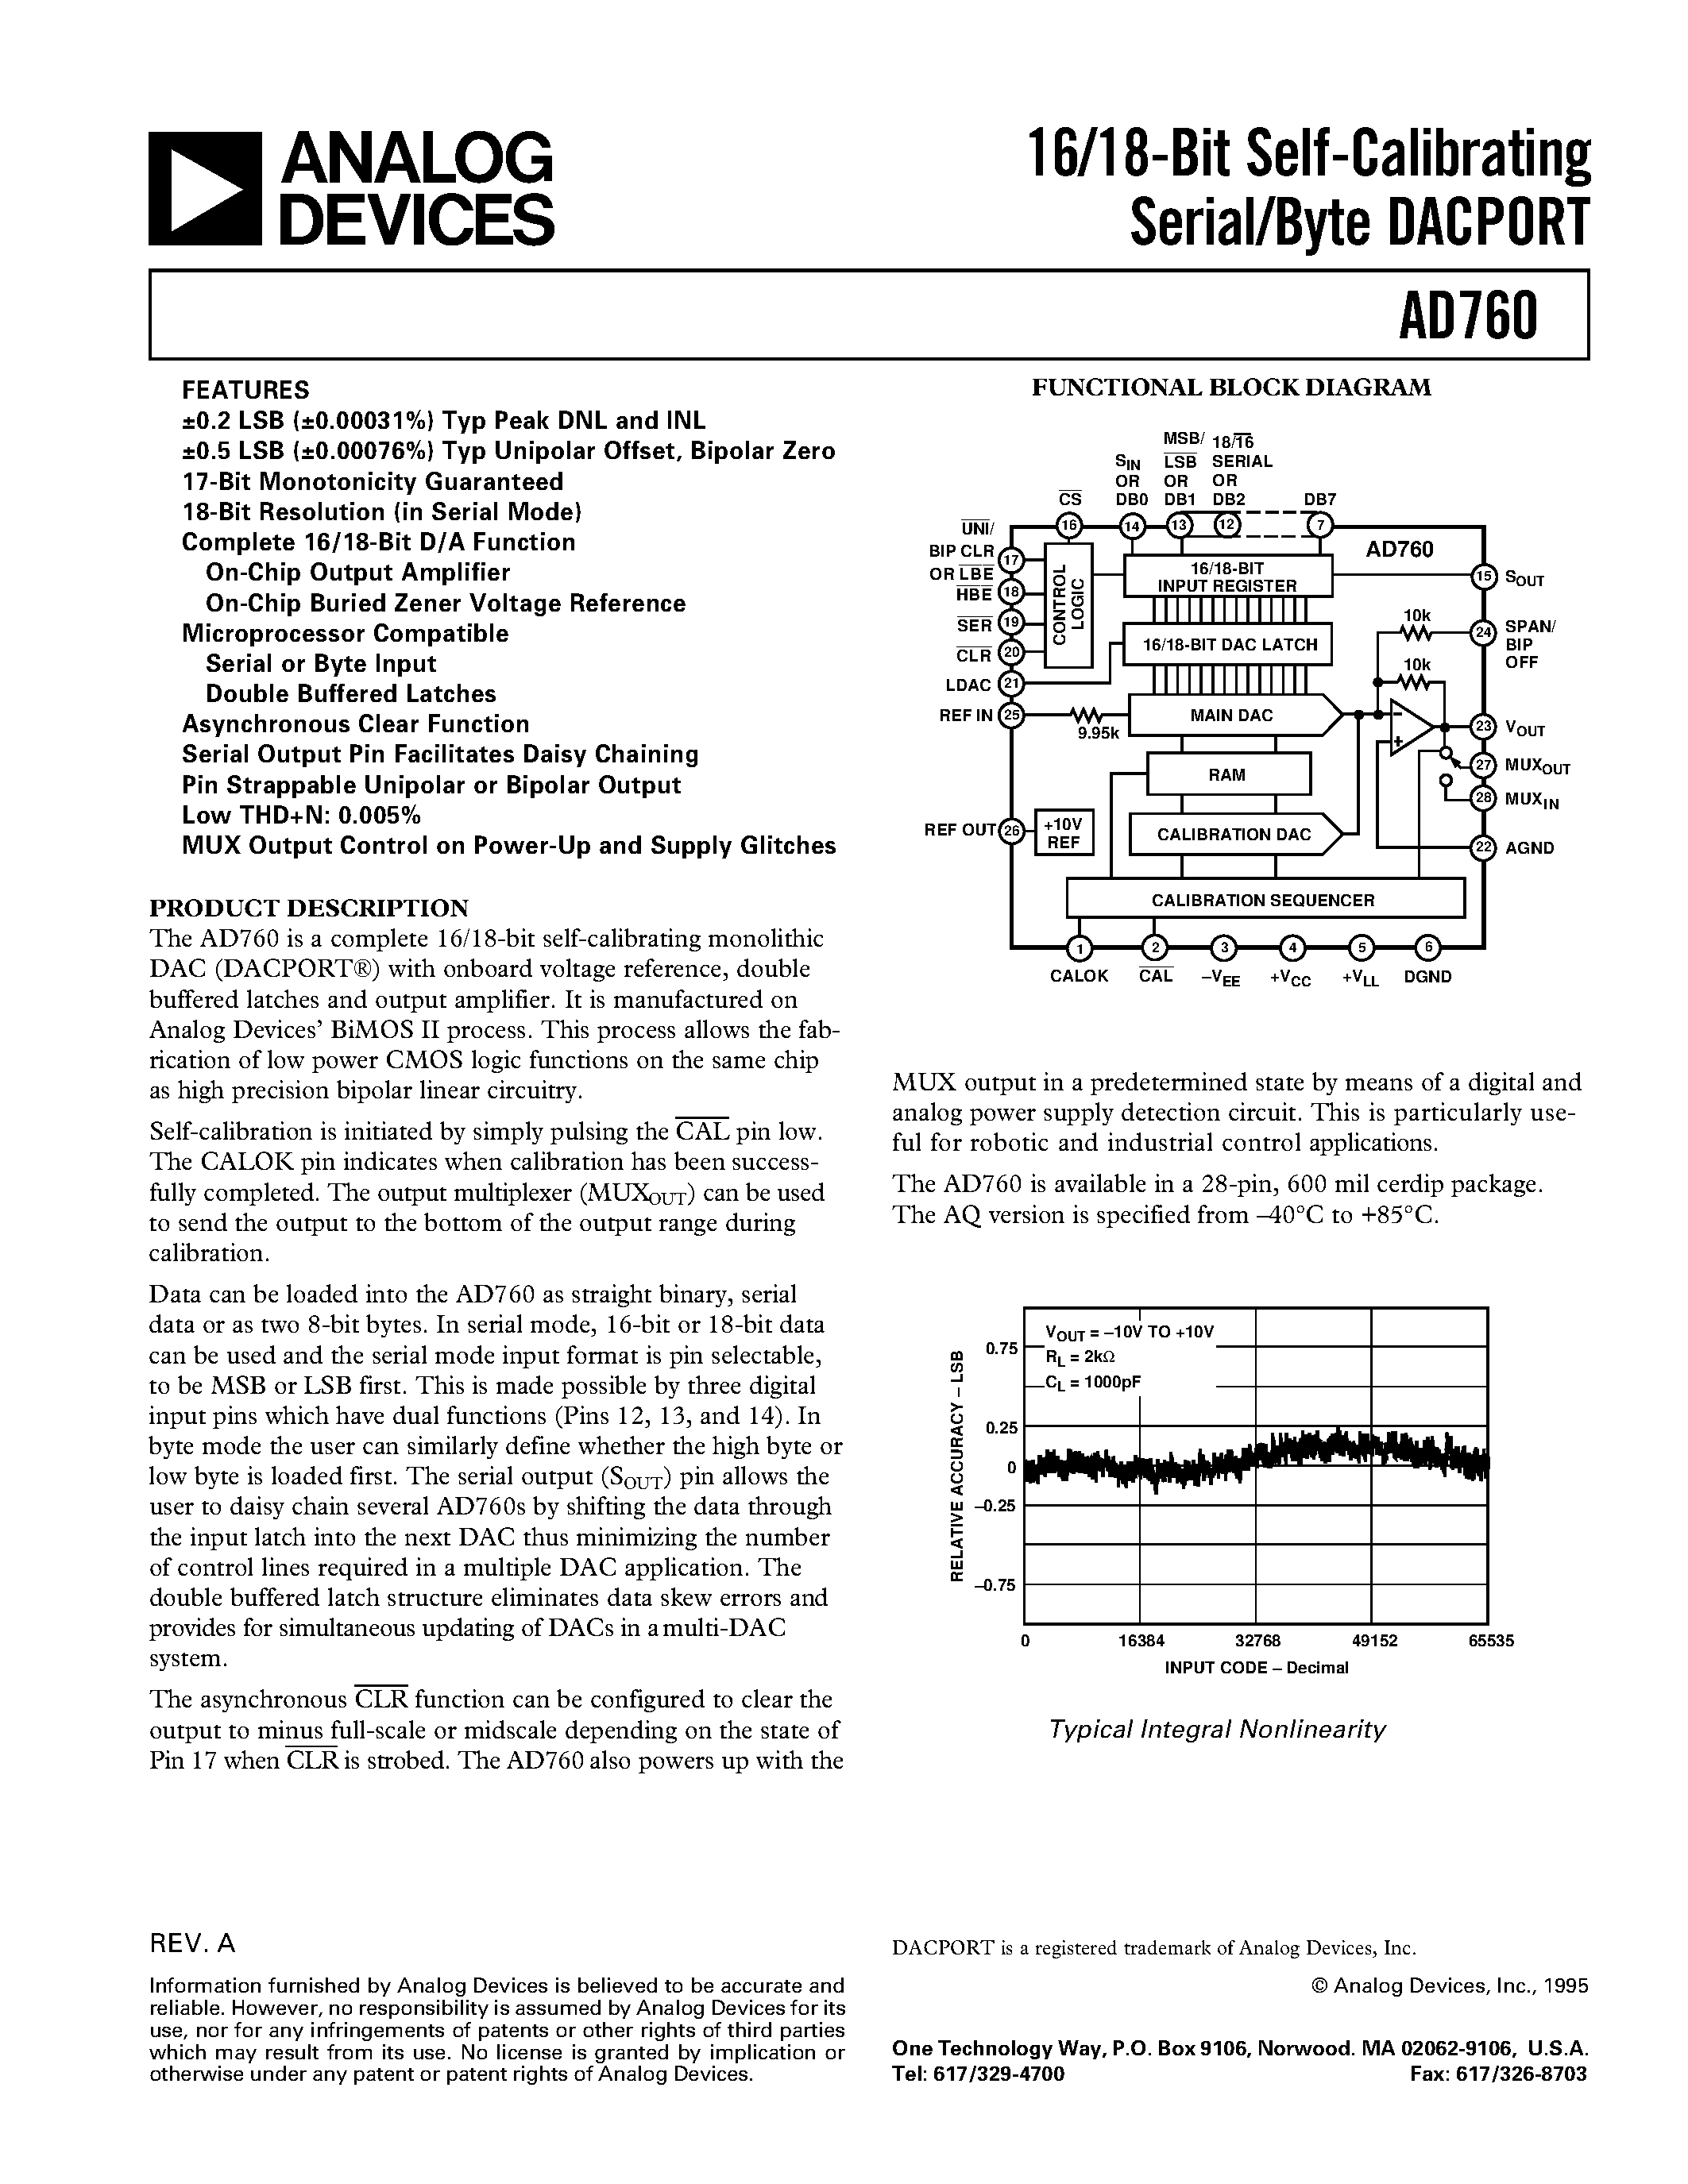 Даташит AD760AQ - 16/18-Bit Self-Calibrating Serial/Byte DACPORT страница 1